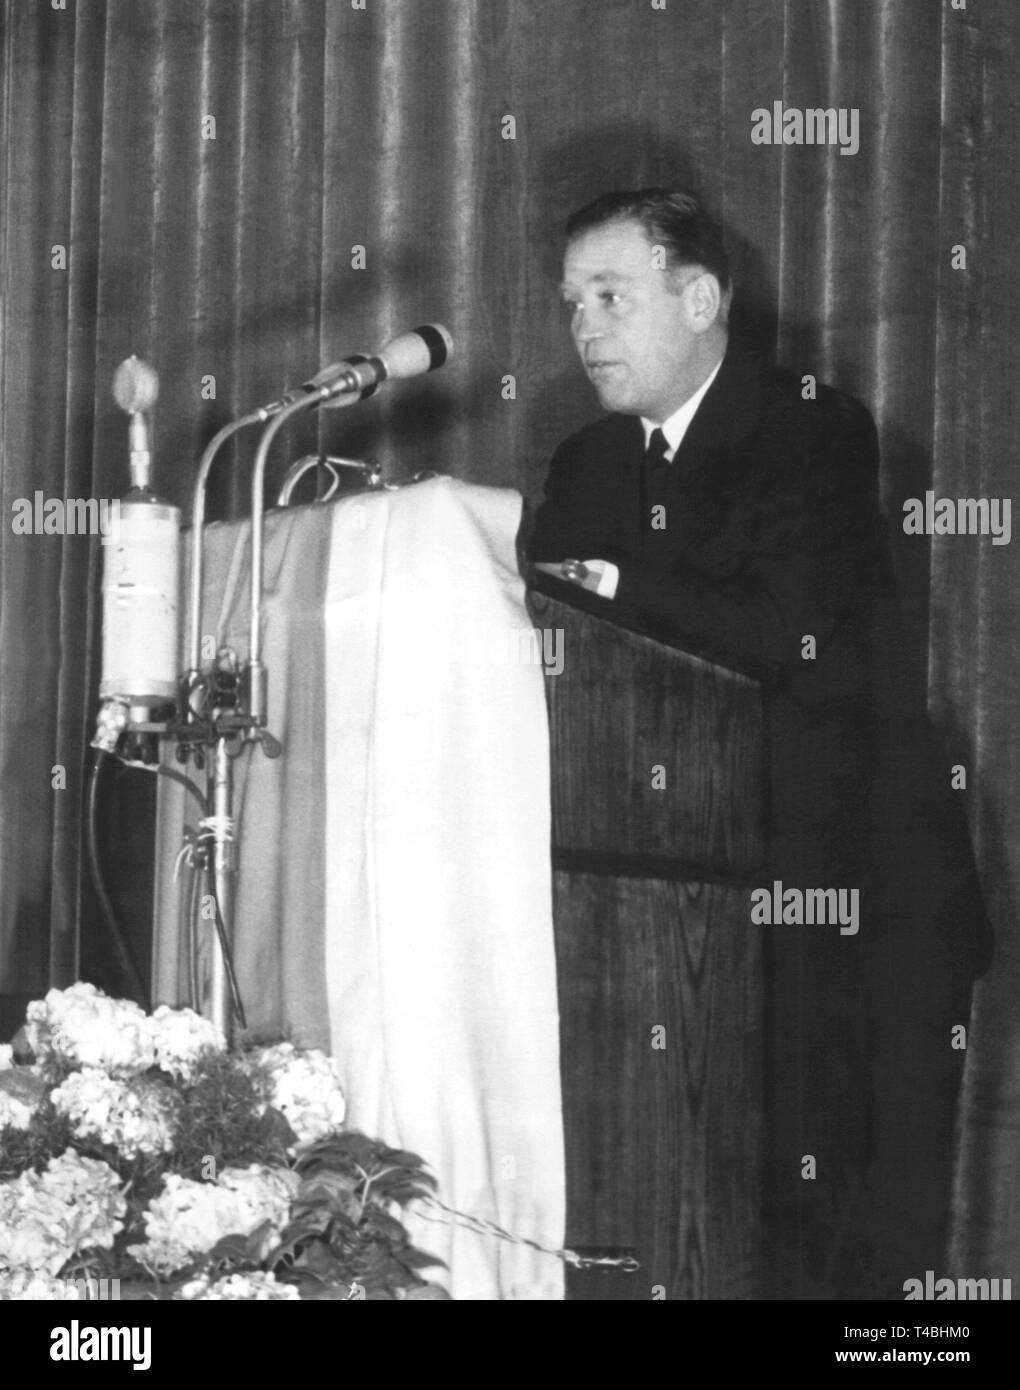 John Otto, ancien président de l'Office fédéral de la protection de la Constitution (1950-54) prend la parole à une conférence de presse à Berlin Est, RDA, 11 août 1954. John est apparu dans la RDA en juillet 1954 en vertu de circonstances non réglées, soi-disant comme réfugié politique. Encore plus surprenant qu'il est retourné à la République fédérale en décembre 1955, il a prétendu avoir été victime d'un enlèvement. Néanmoins, John a été puni pour trahison à quatre ans de prison en 1956. Dans le monde d'utilisation | Banque D'Images